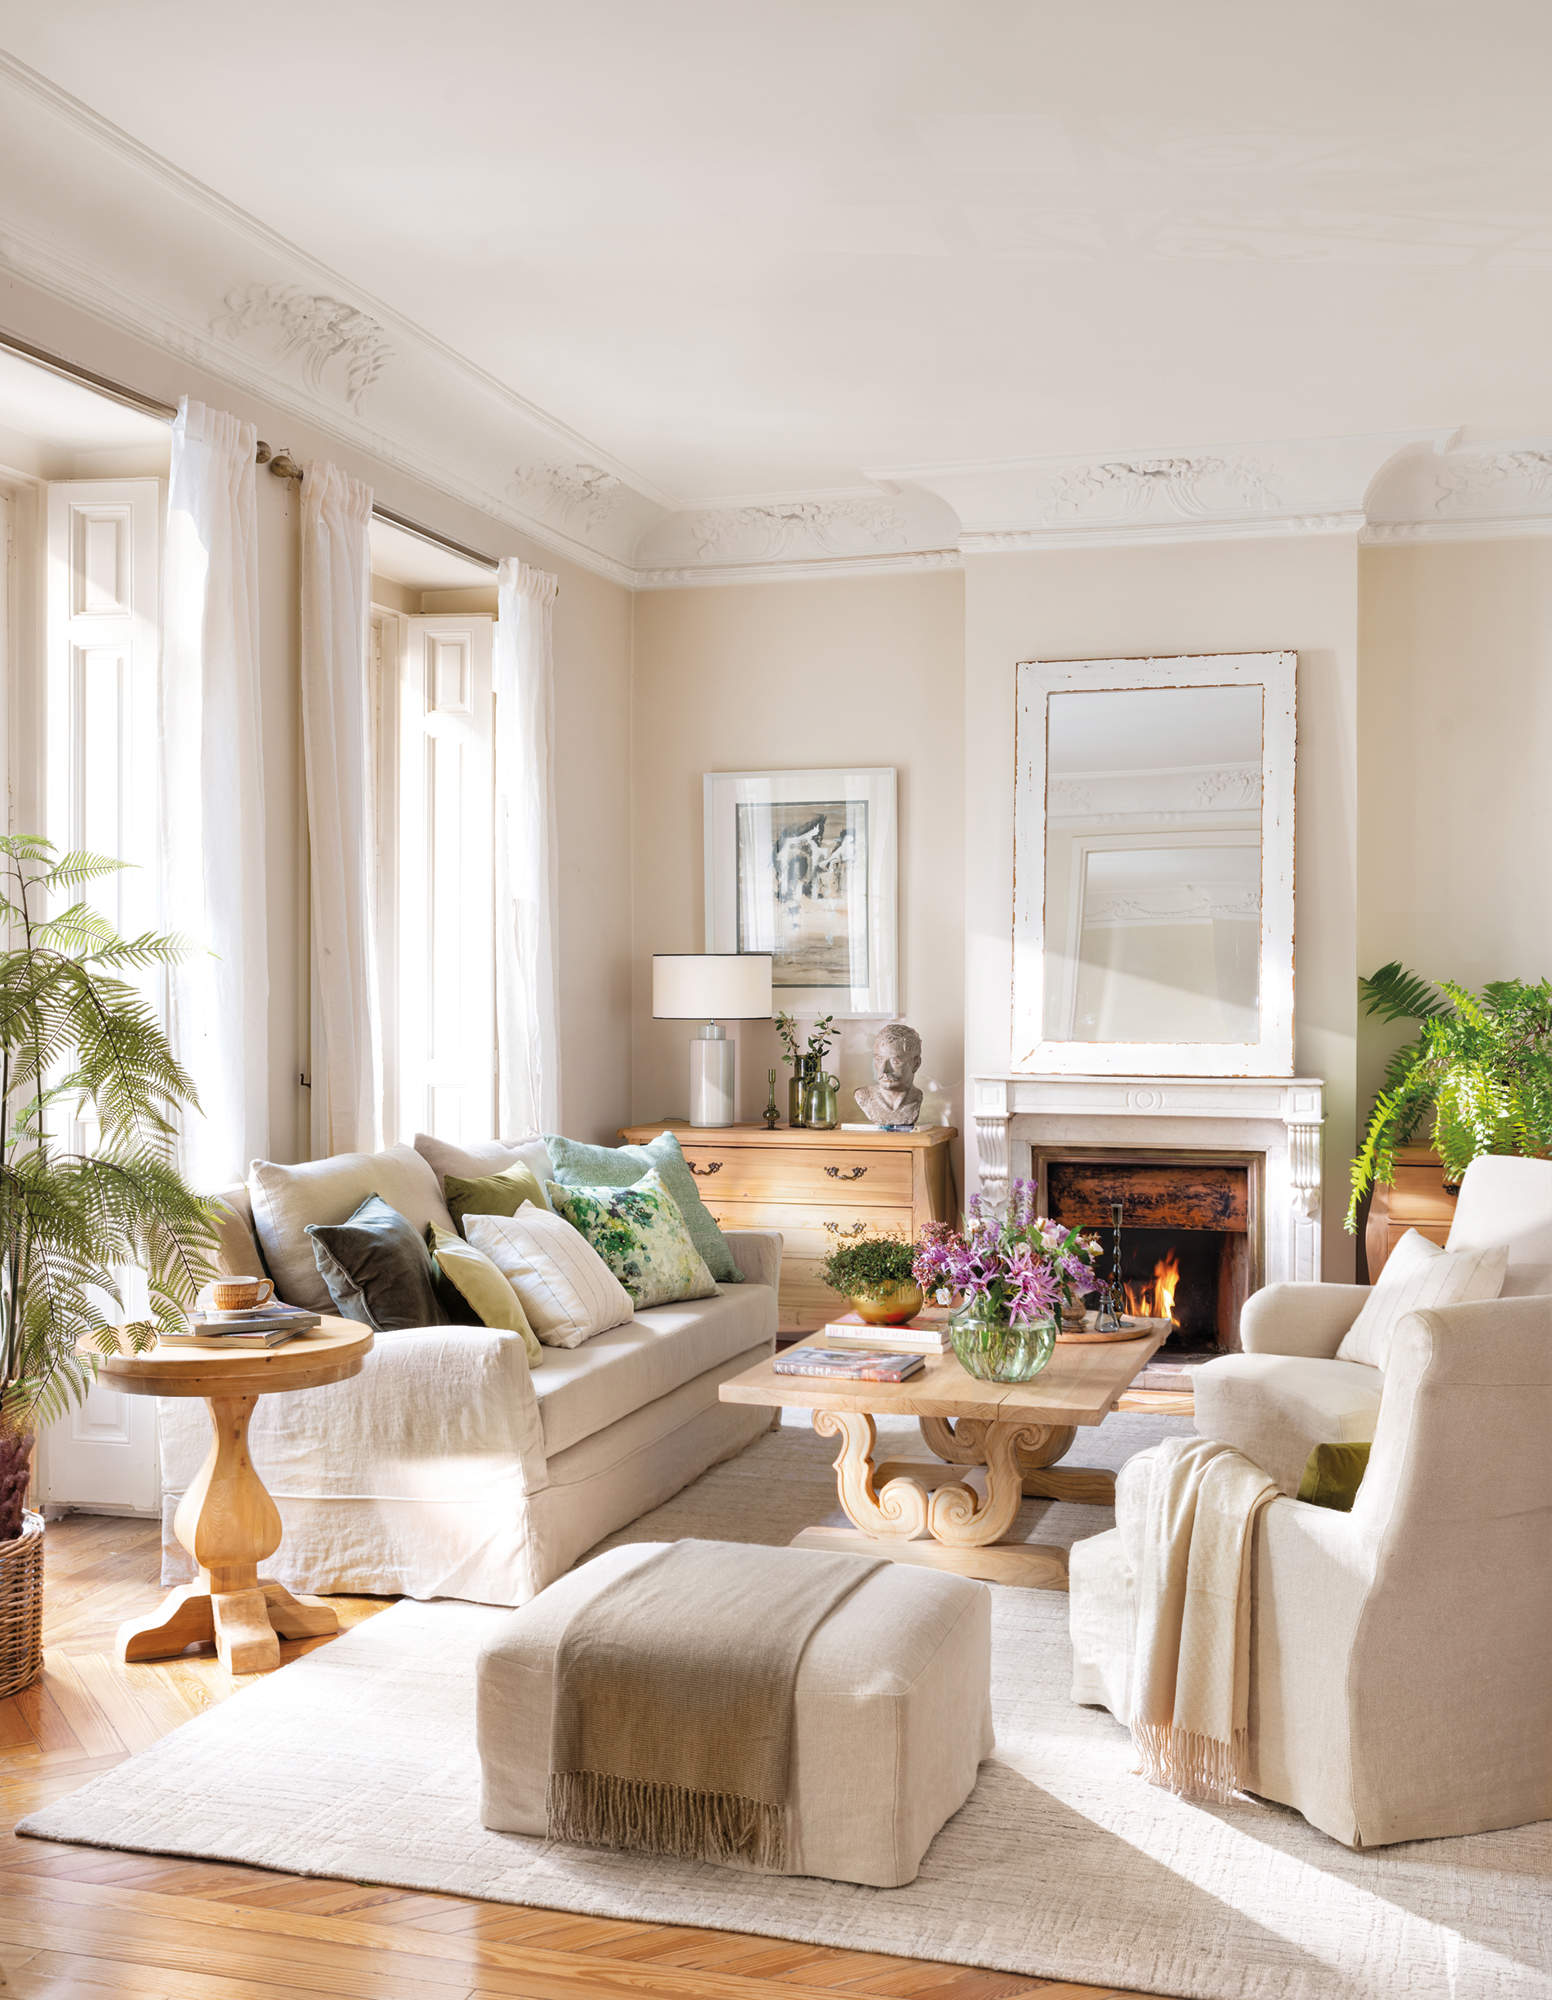 Salón neoclásico con molduras, muebles de madera, sofás de lino y chimenea.